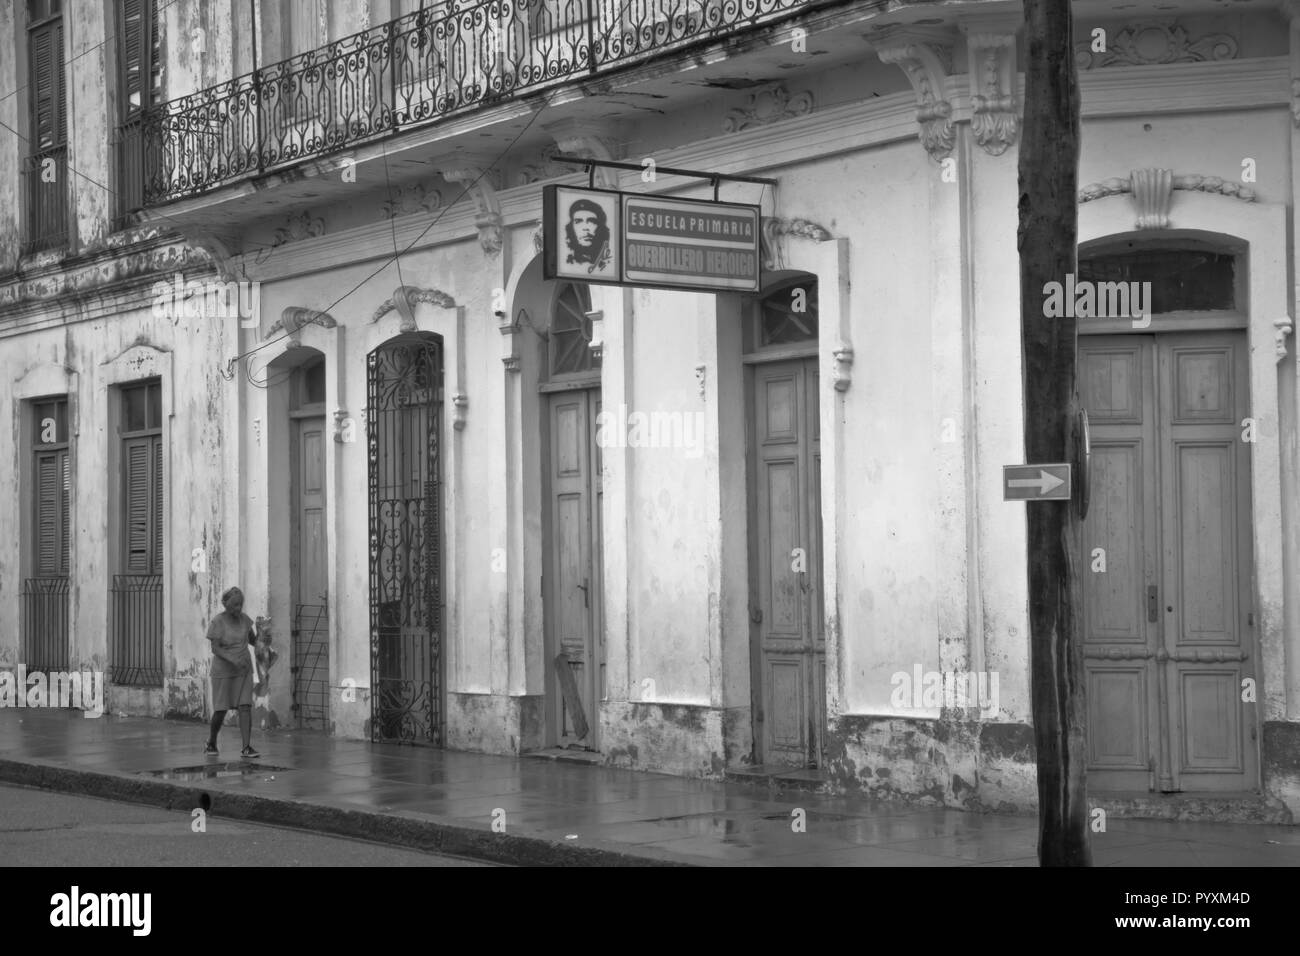 Cuba, La Havane, La Havane, Caraïbes, 'Perle des Antilles' de vieilles voitures, rues et de belles plages. Banque D'Images